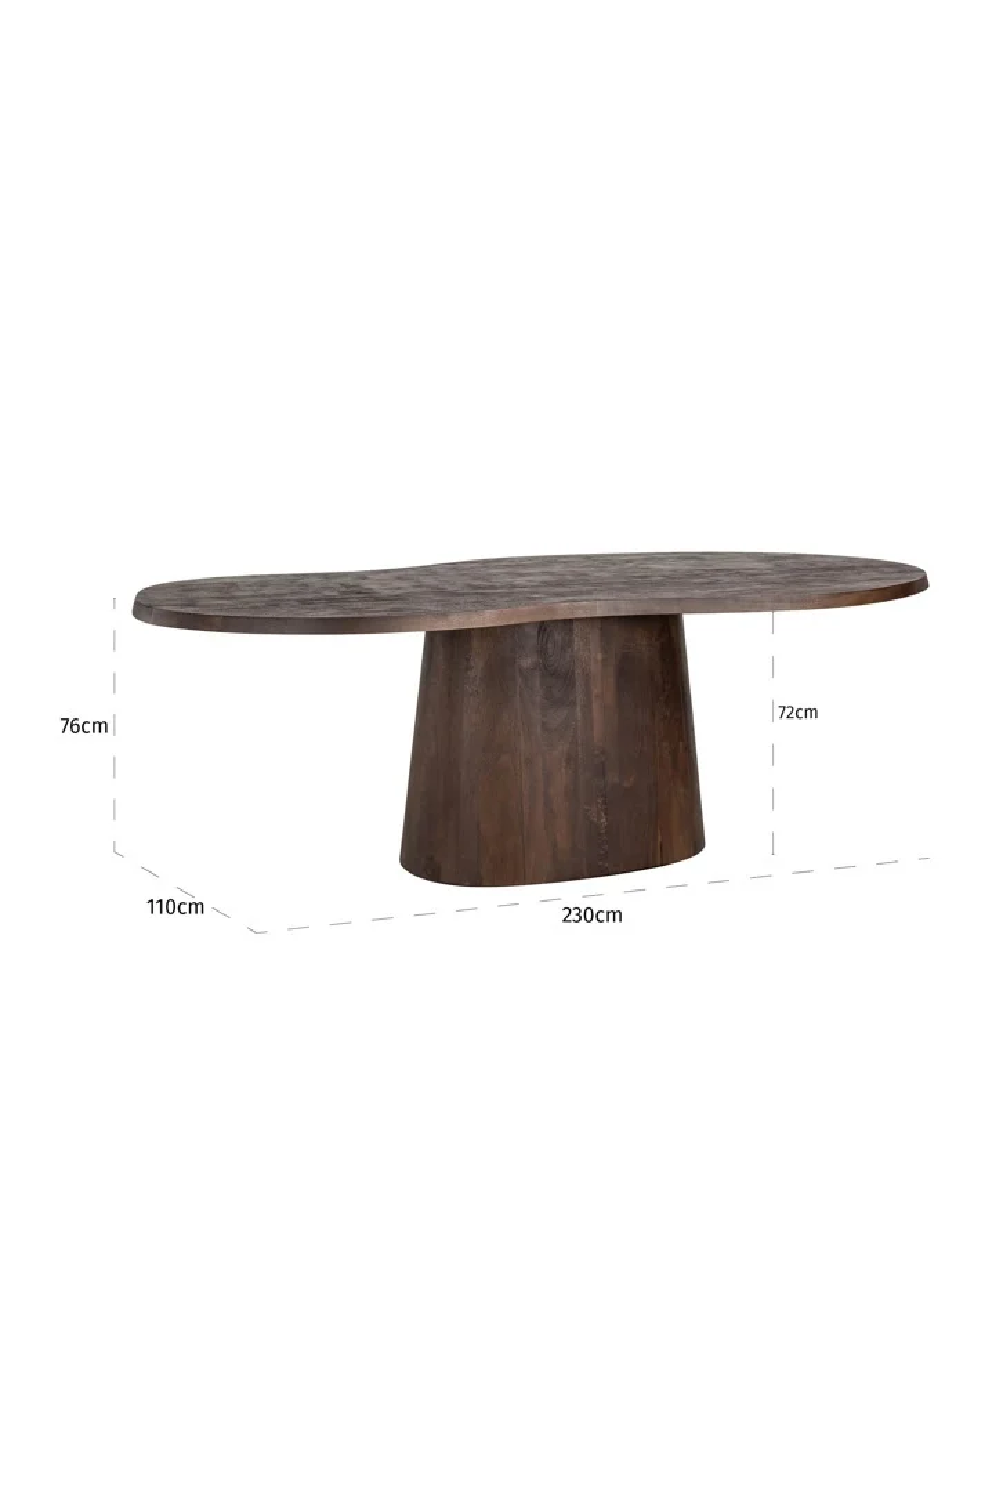 Wooden Organic-Shaped Dining Table | OROA Odile | Oroa.com